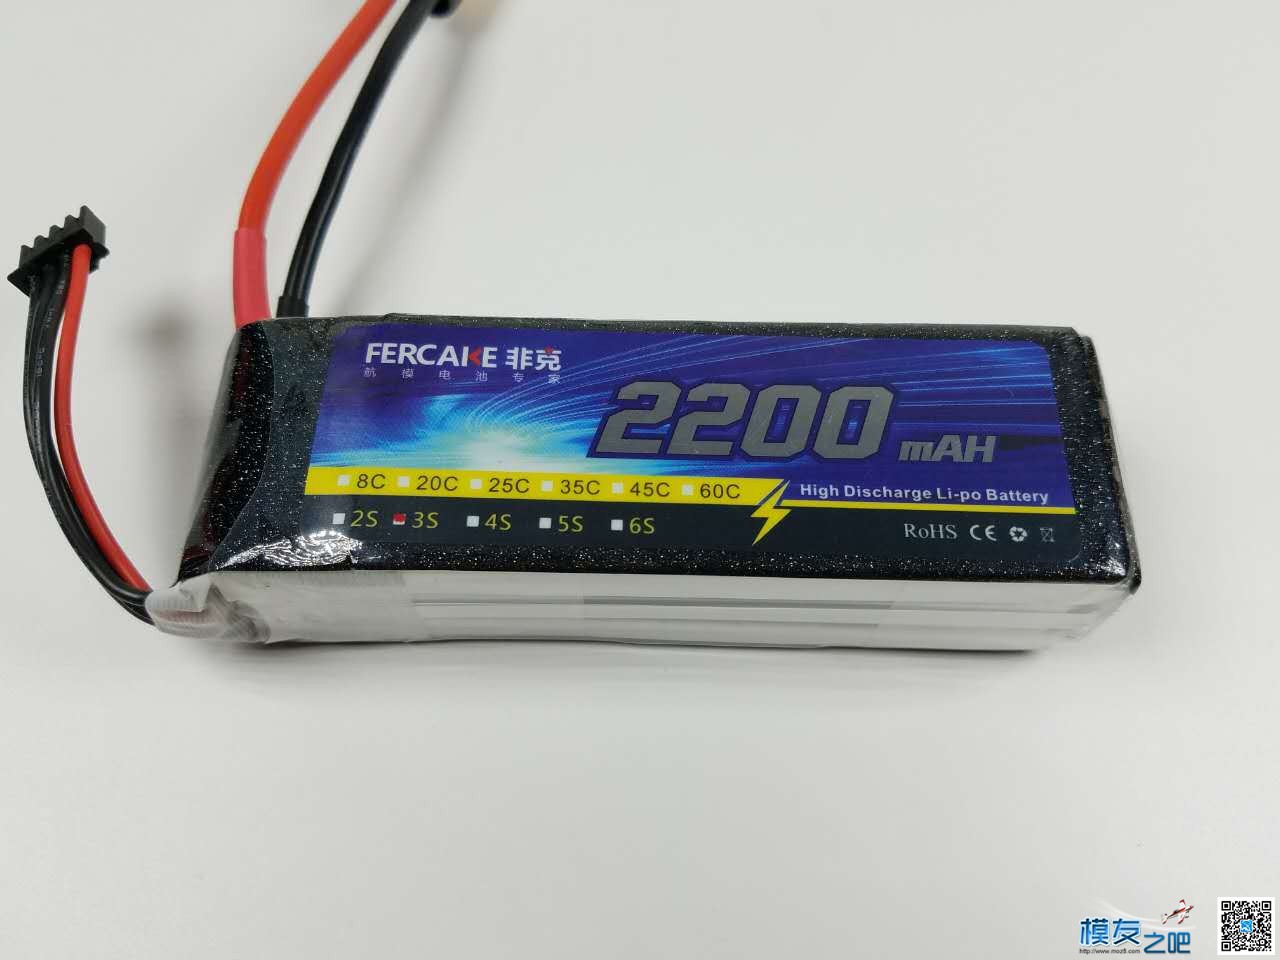 非克电池测试体验活动 电池,非克汽车02,taobao 作者:飞天狼 5213 